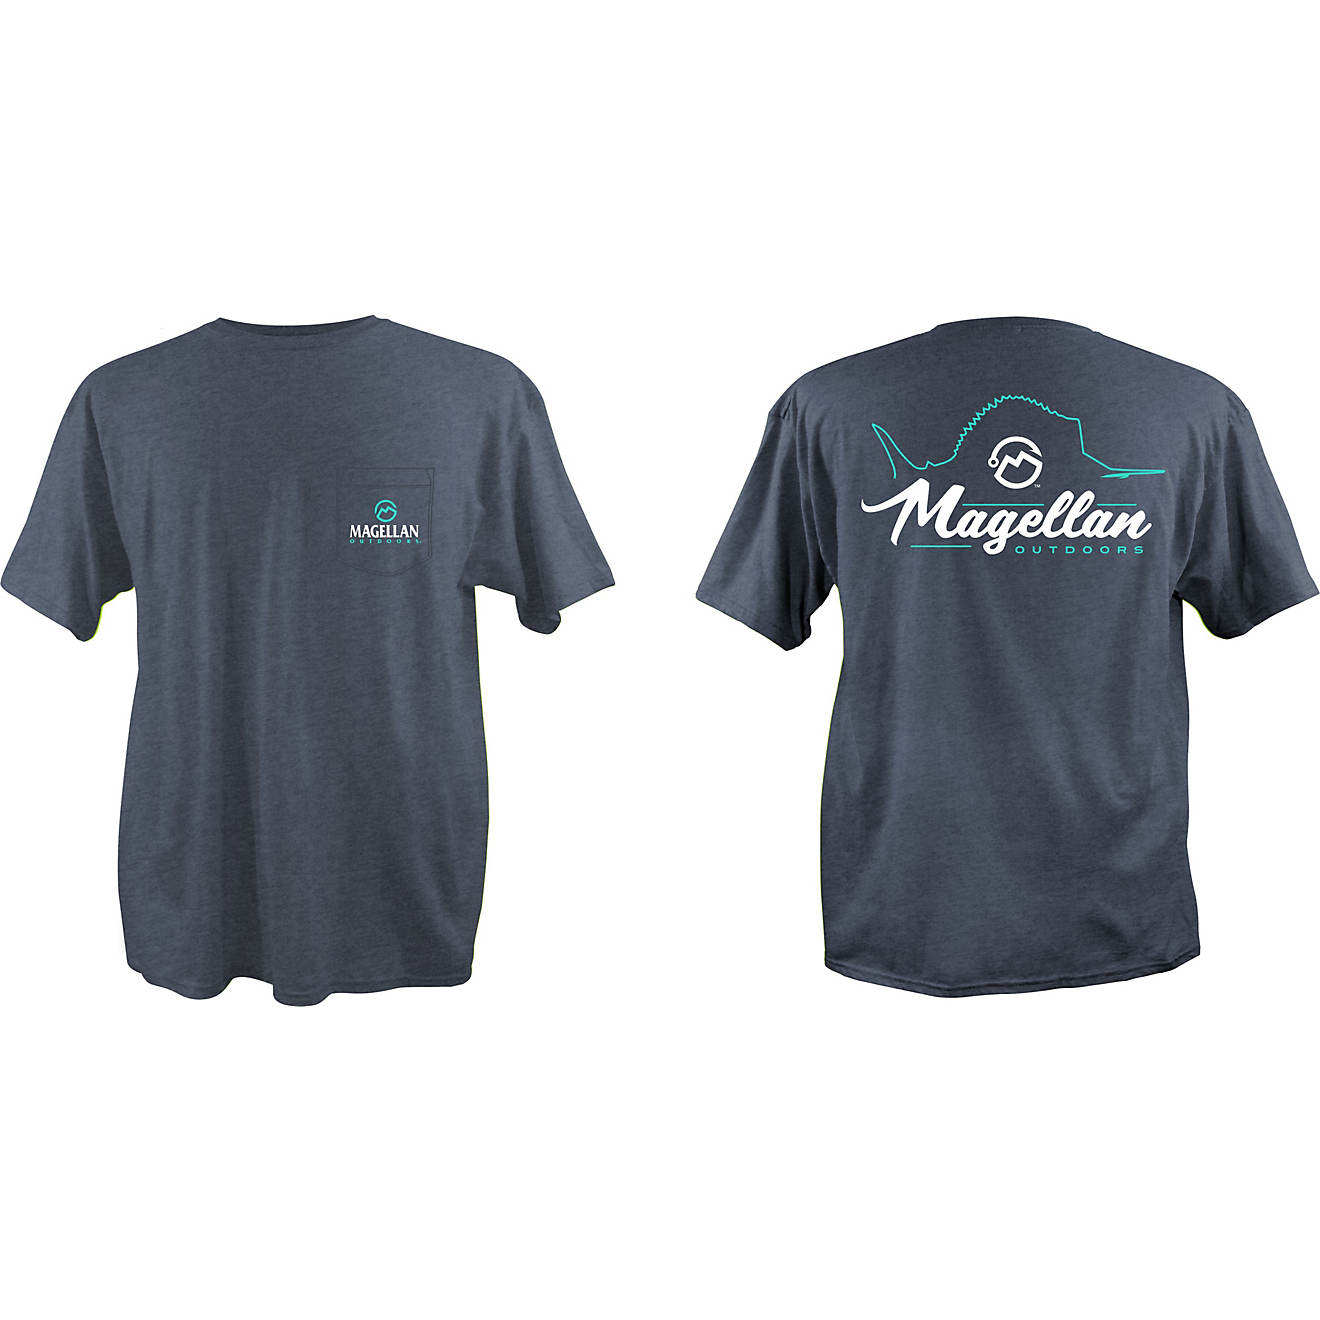 Magellan Outdoors Men's Logo Sailfish Graphic T-shirt